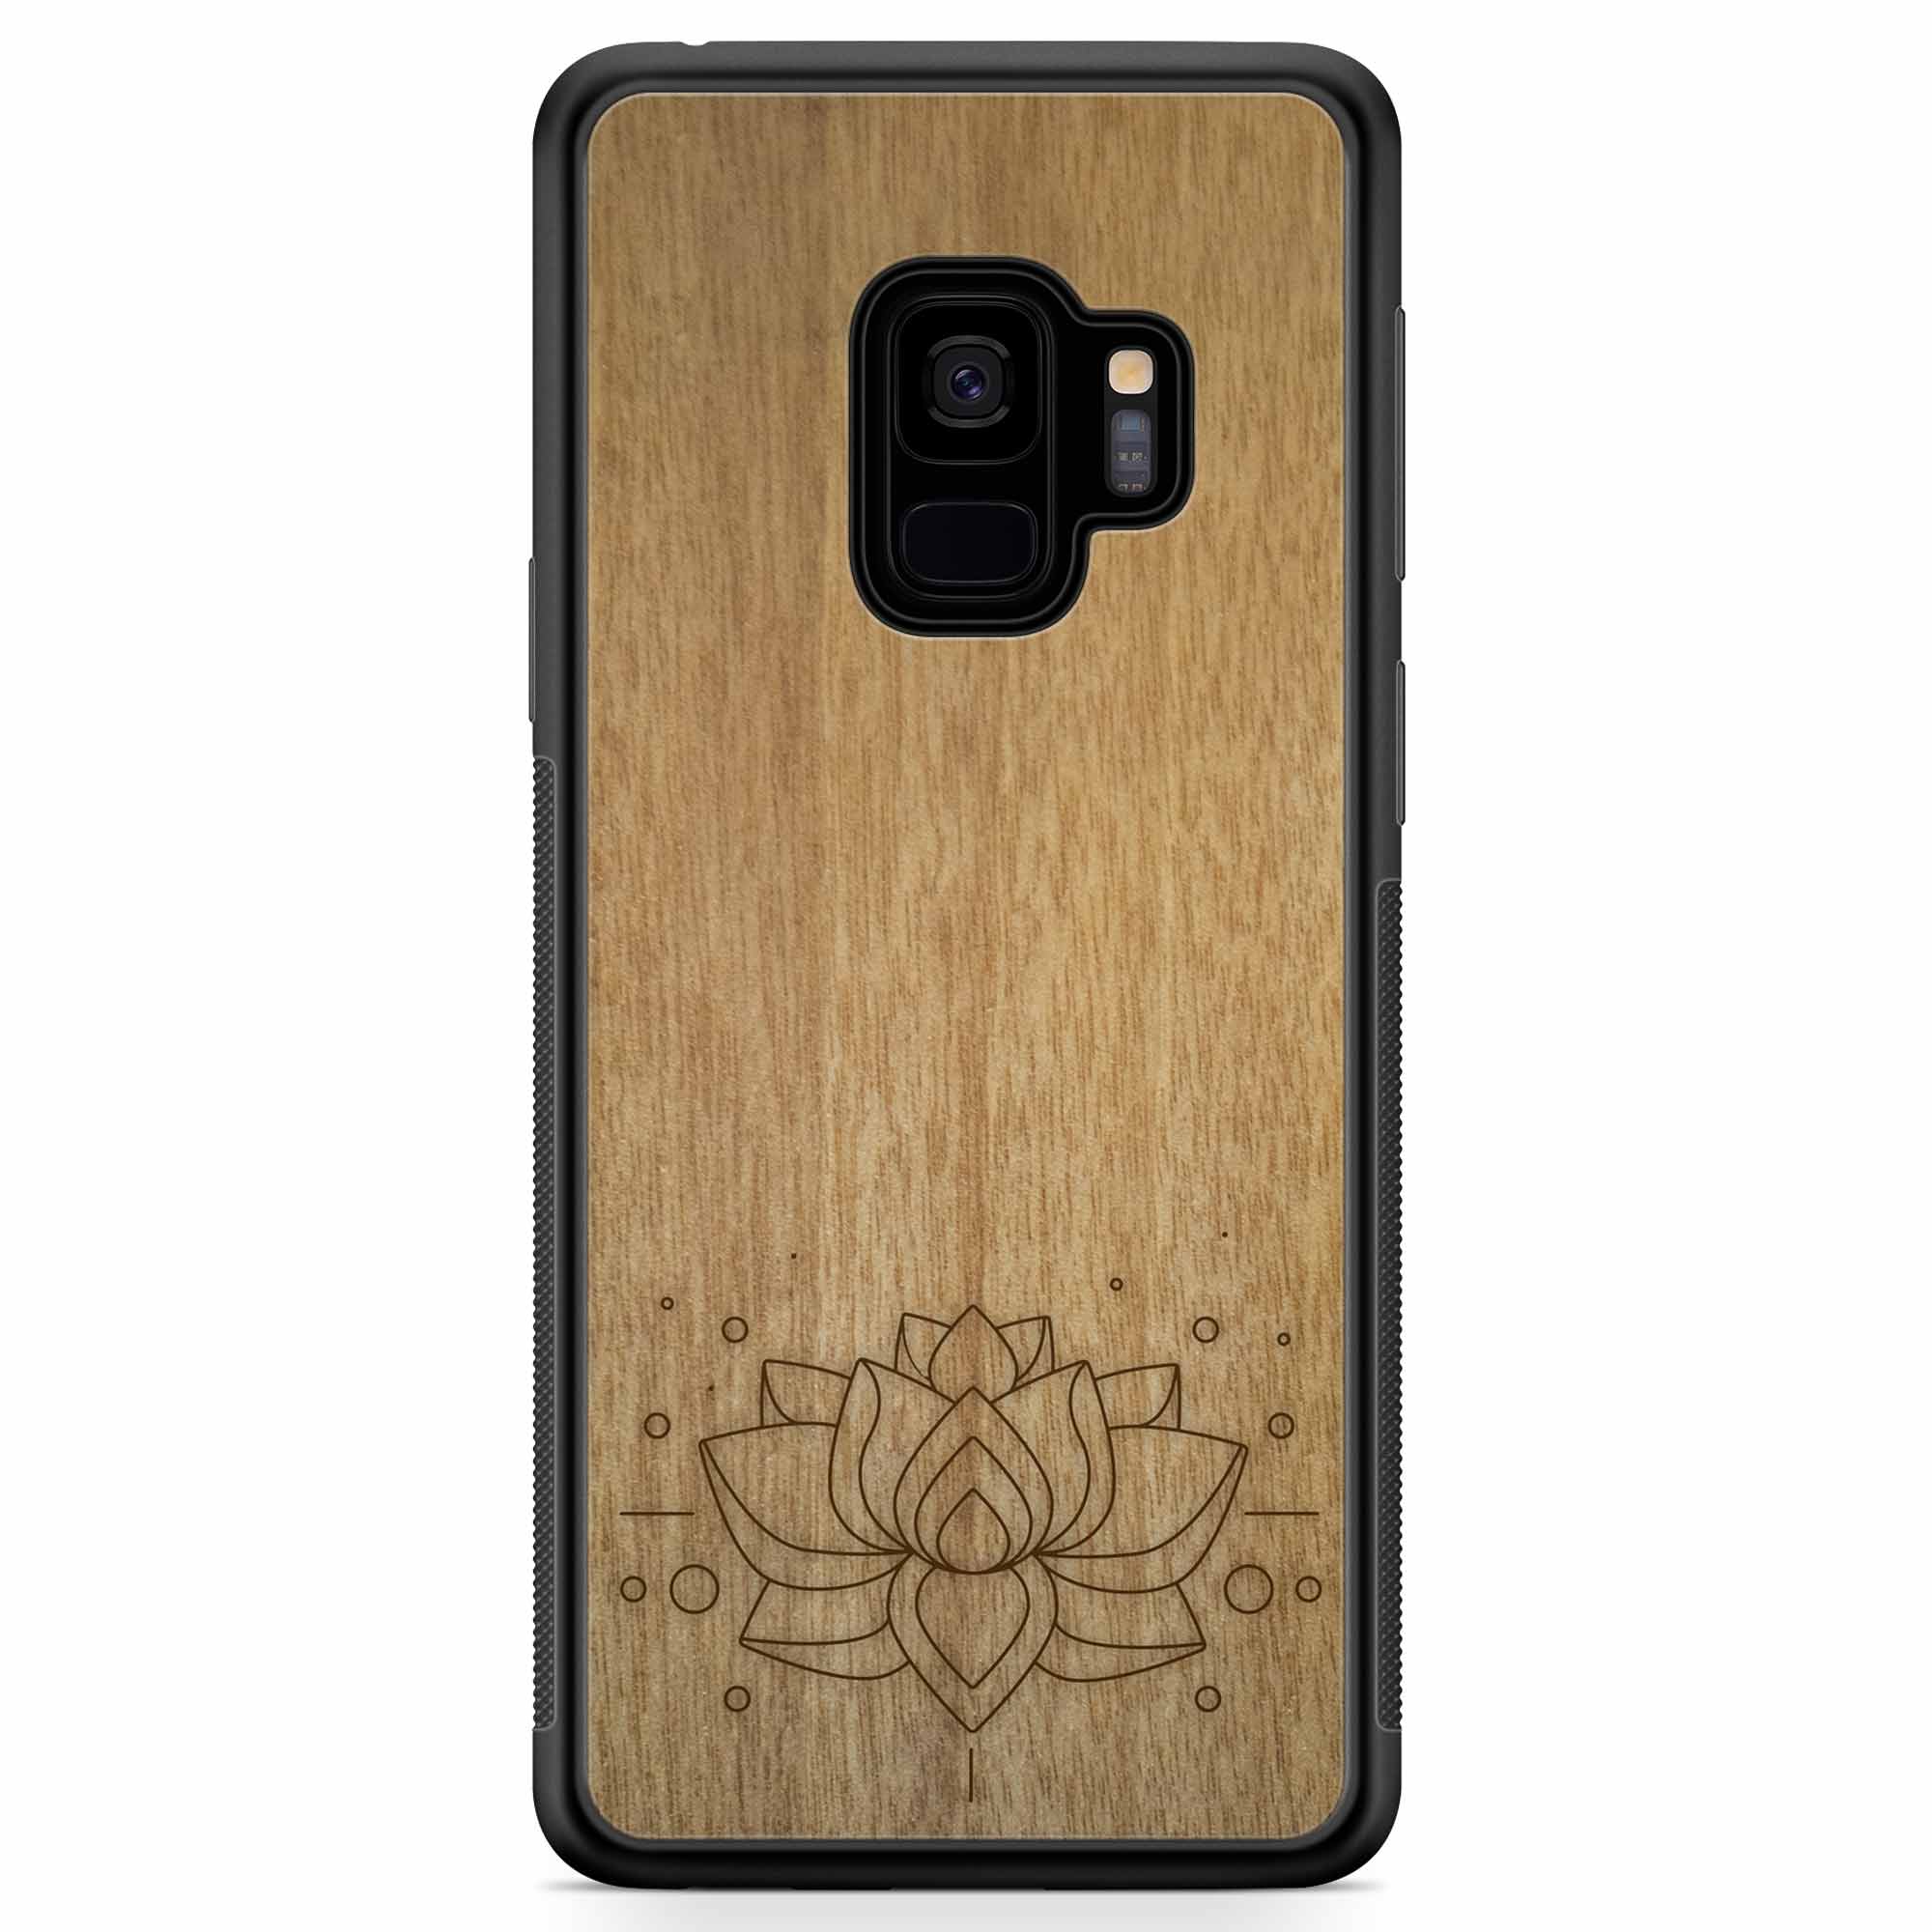 Carcasa de madera para teléfono con grabado Lotus Samsung S9